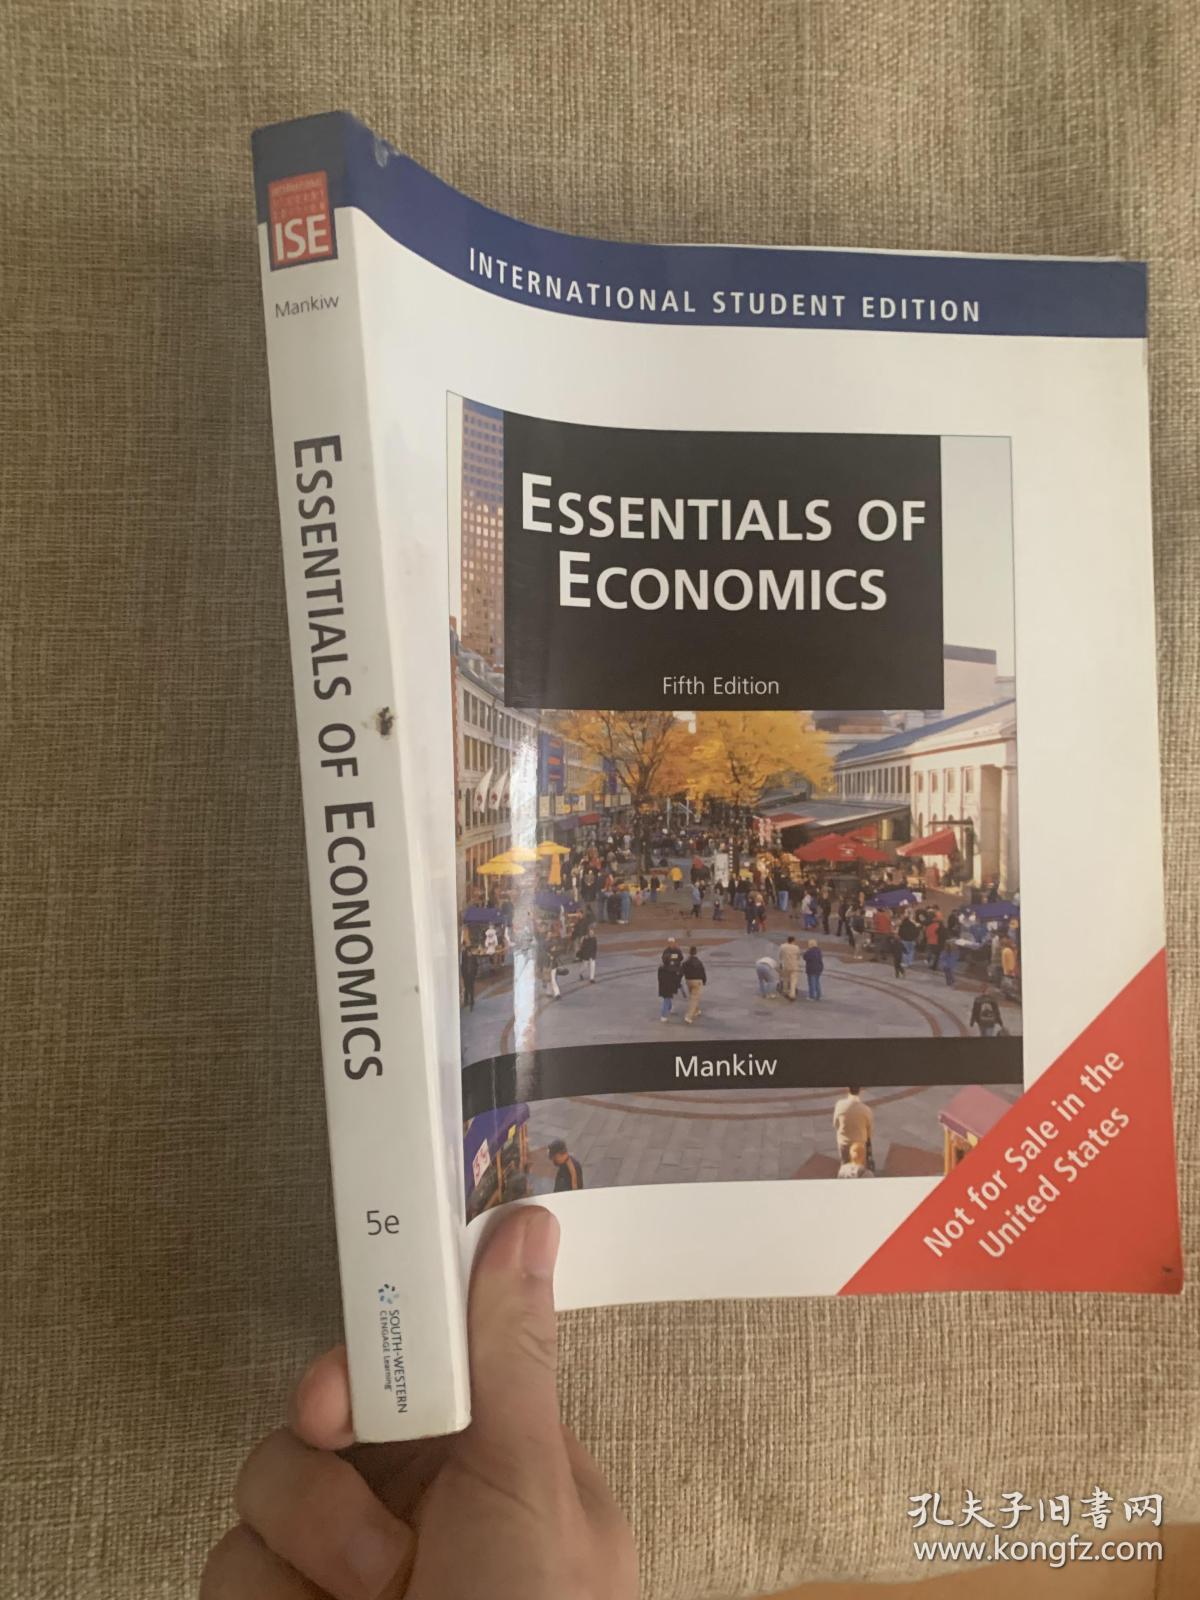 essentials of economics